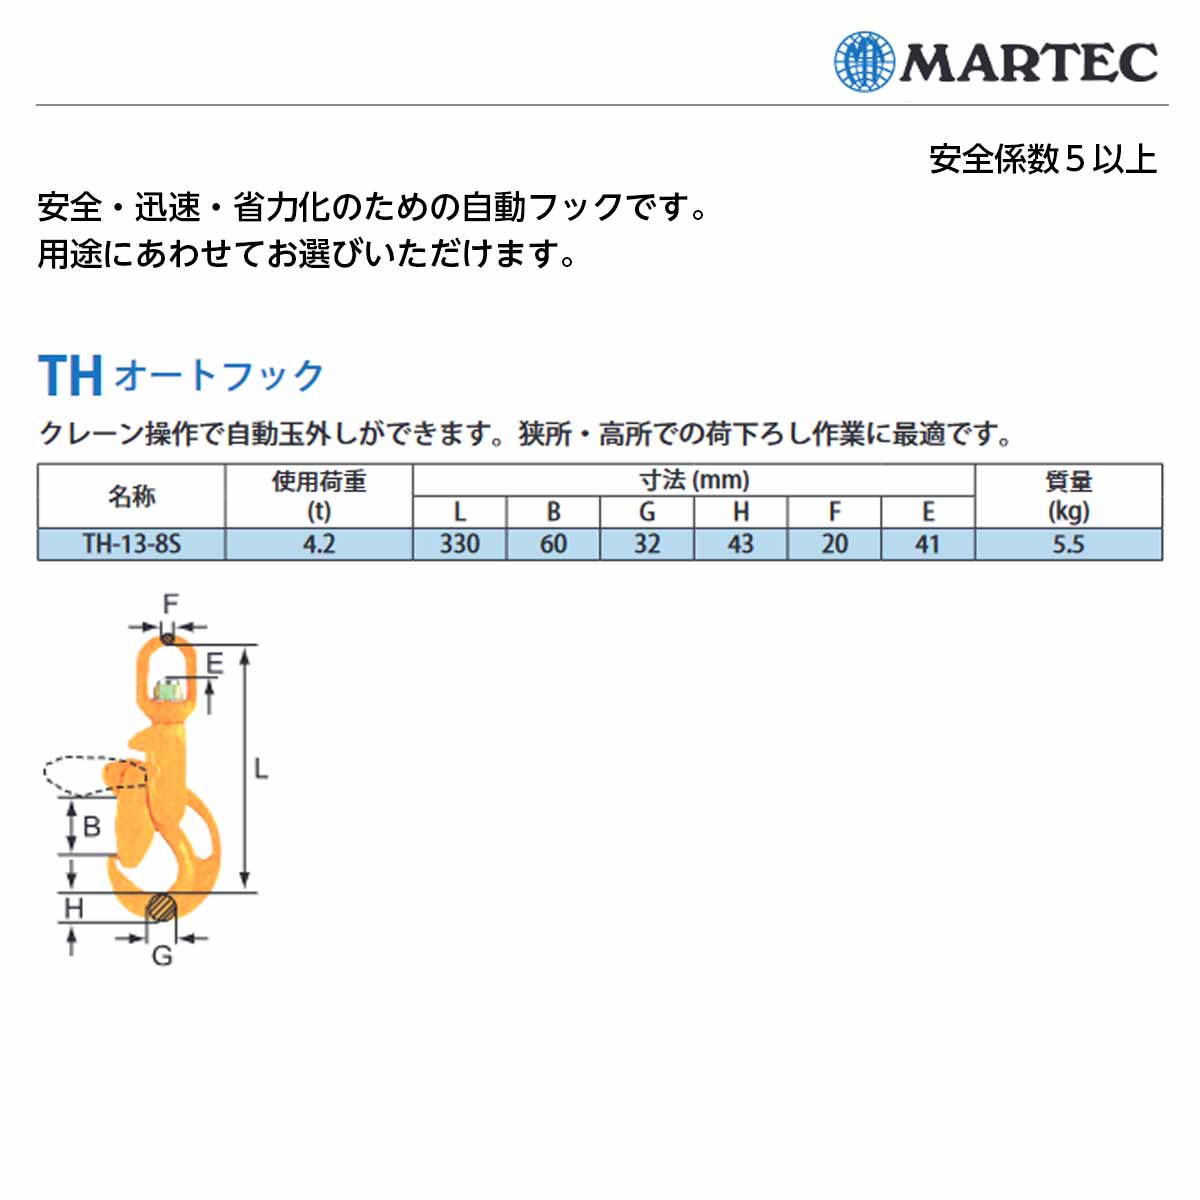 マーテック(MARTEC) 自動吊り具 THオートフック クレーン 吊具 荷